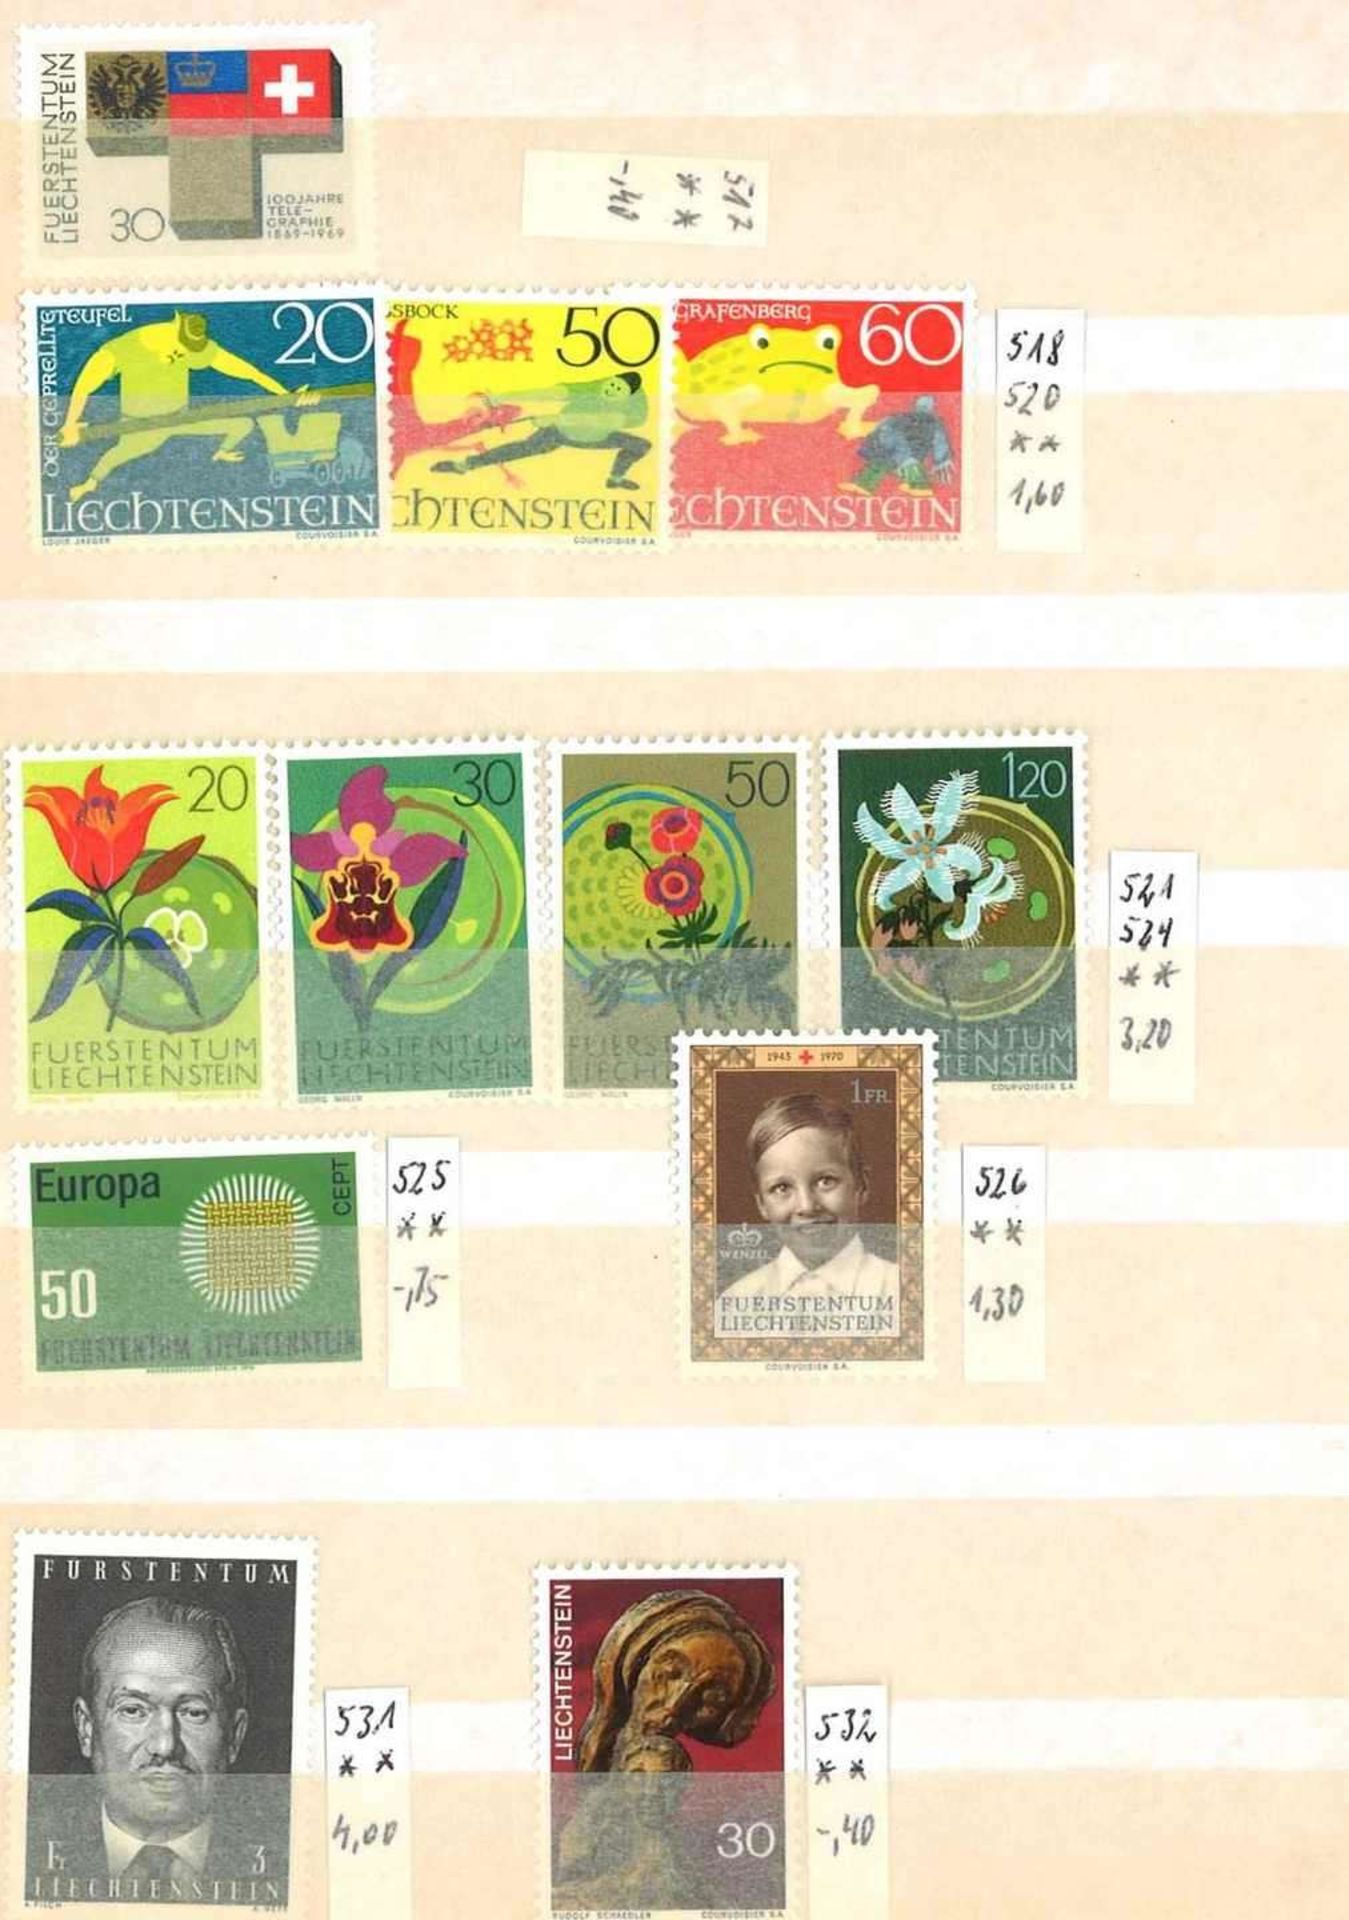 Kleine Sammlung Liechtenstein, dabei Jahrgang 1961-1973, diverse Katalognummern. Sauber gesammelt. - Bild 2 aus 2